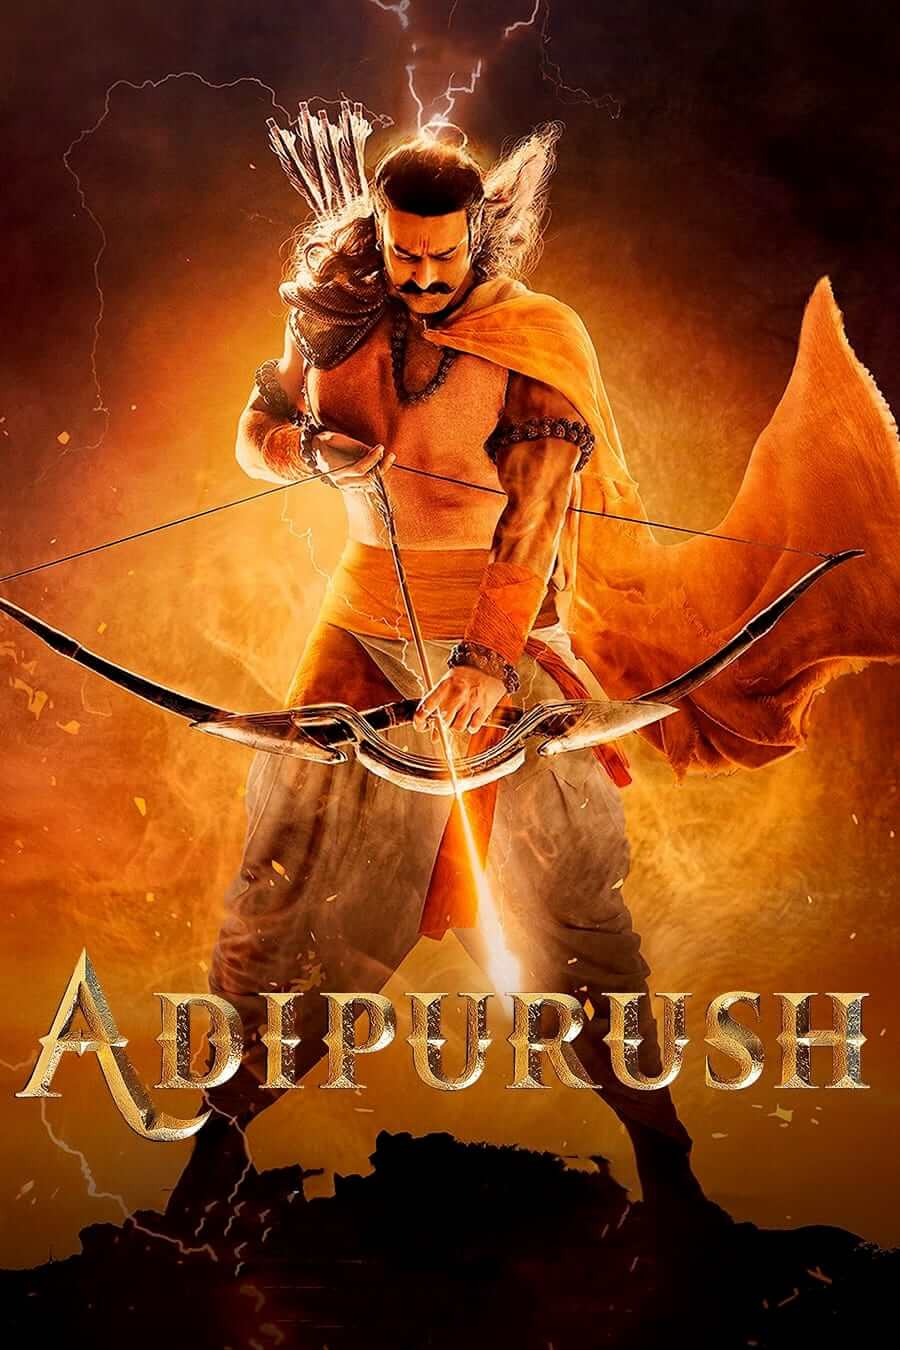 دانلود فیلم آدیپوروش Adipurush